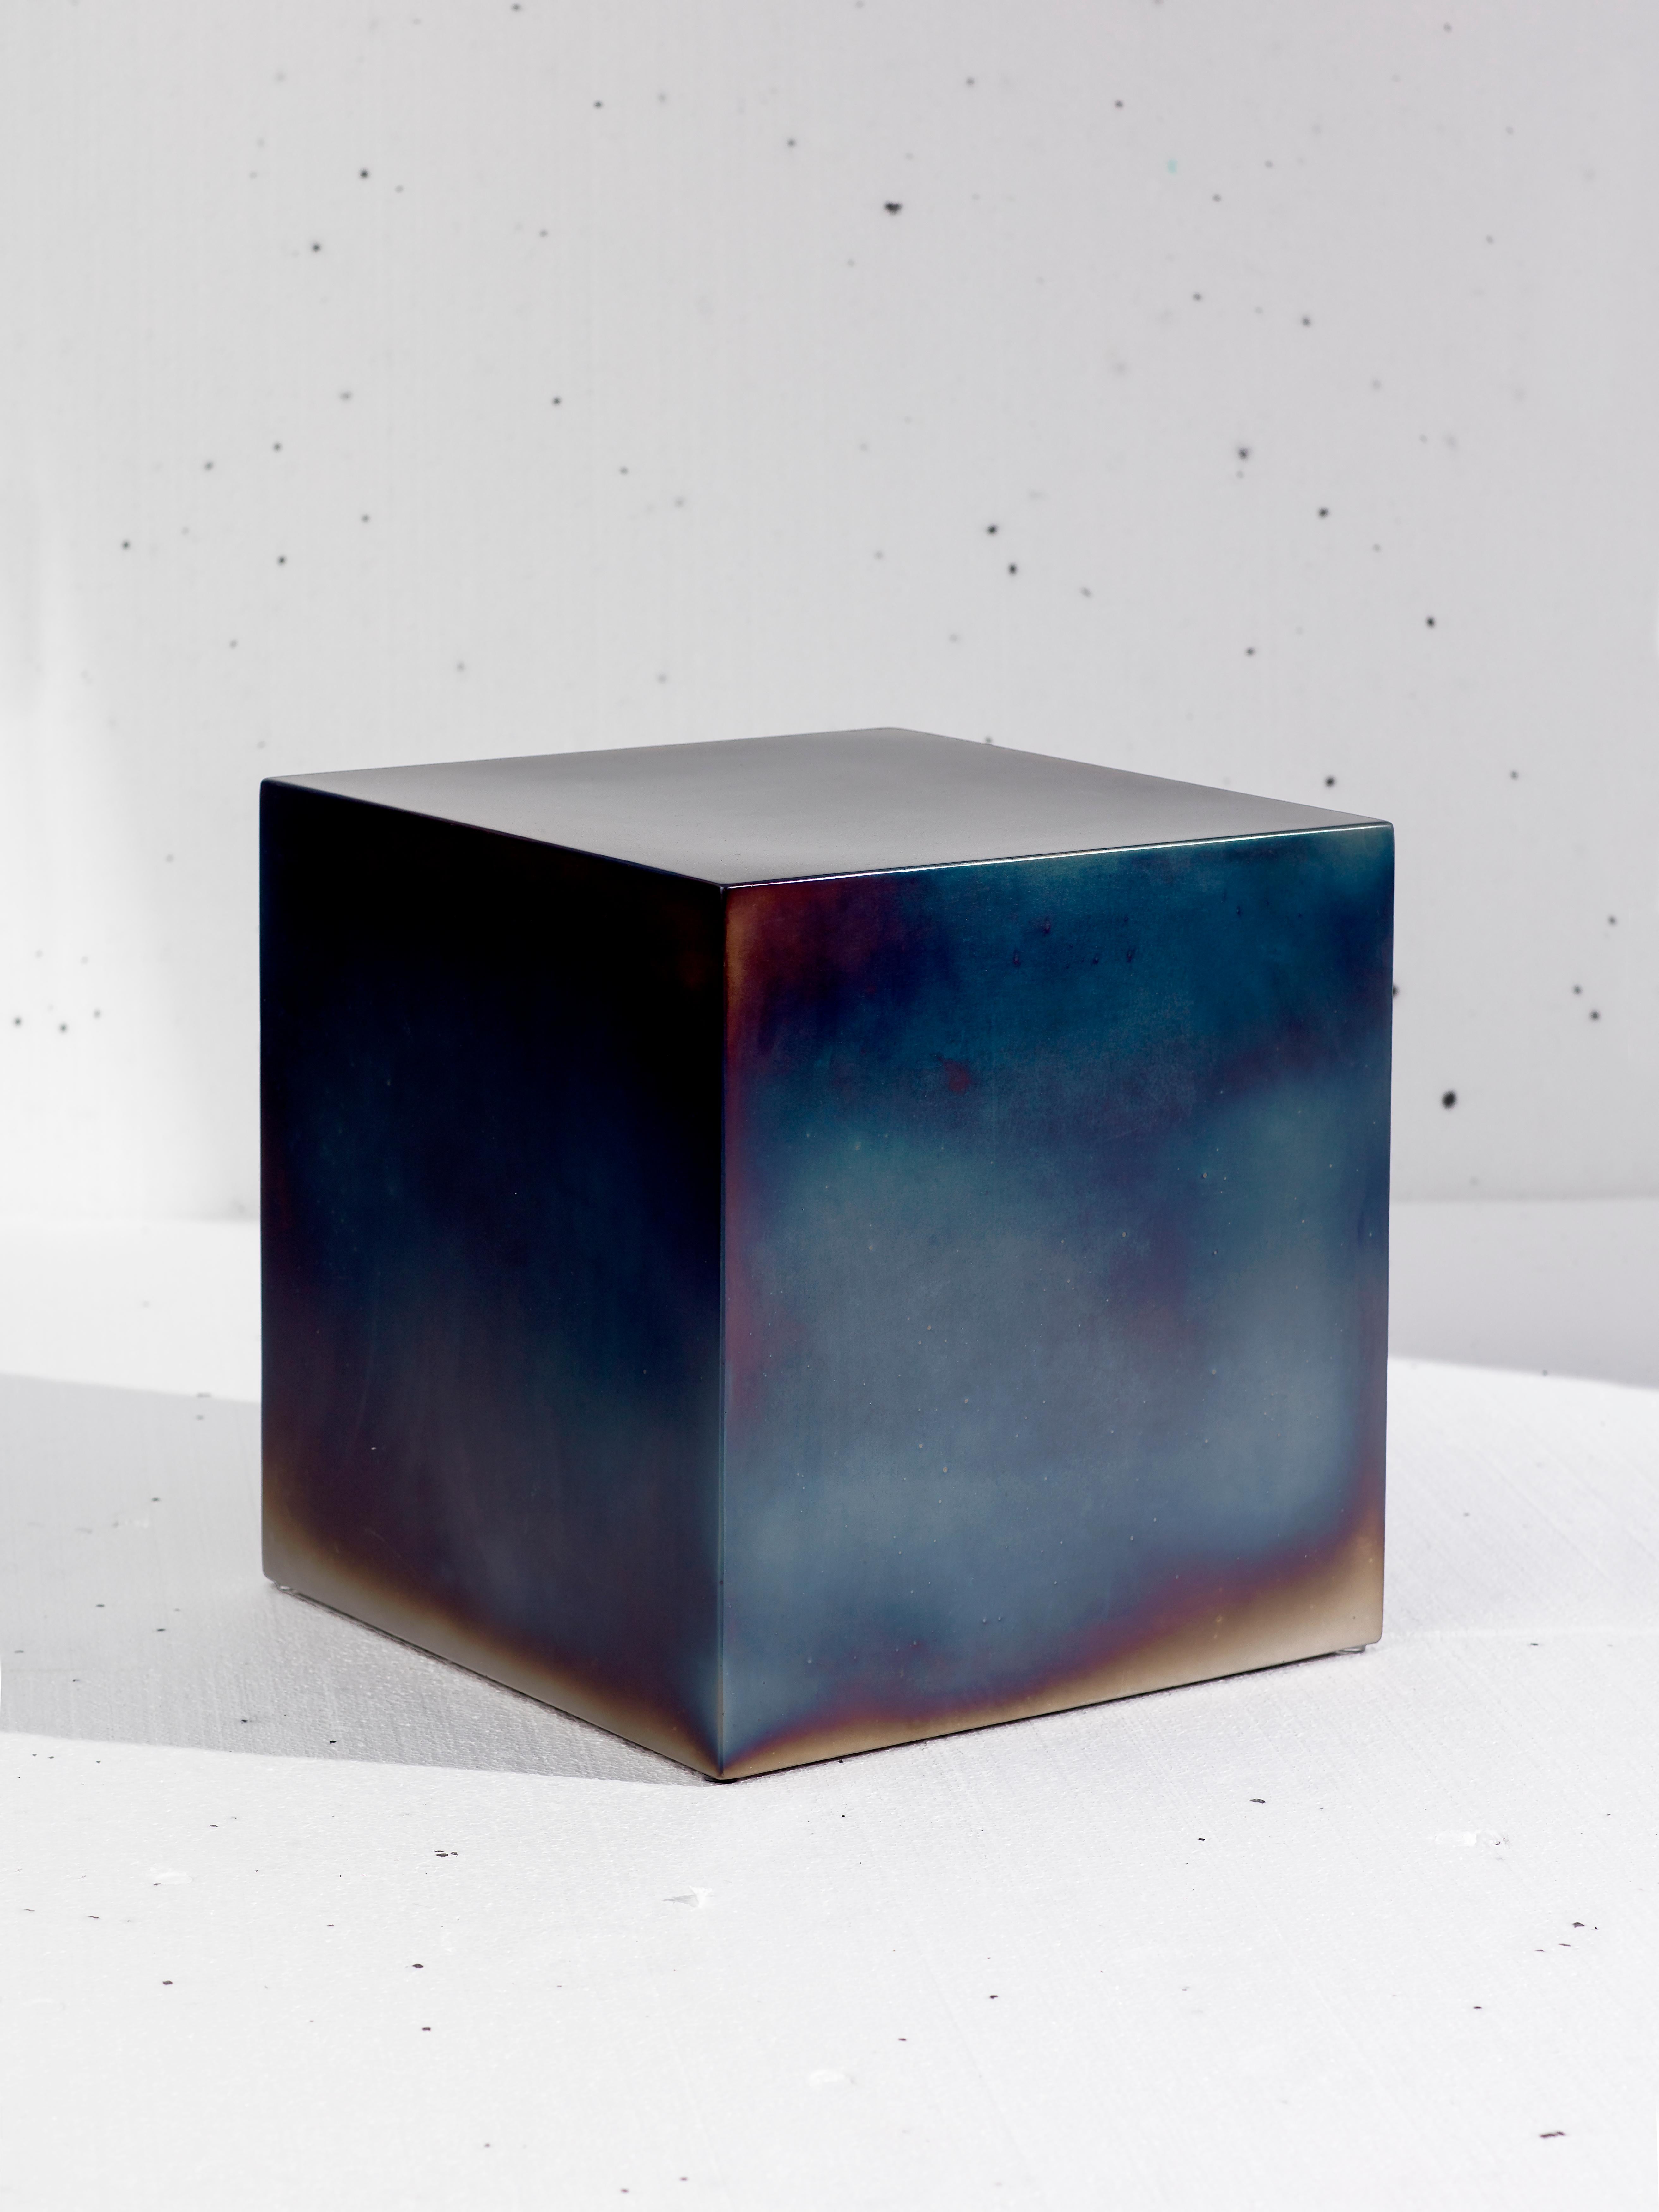 La version en acier du classique du design contemporain Candy Cube de la designer néerlandaise Sabine Marcelis. 

La finition en acier trempé prend un angle différent par rapport aux cubes en résine qui sont des objets apparemment solides avec un